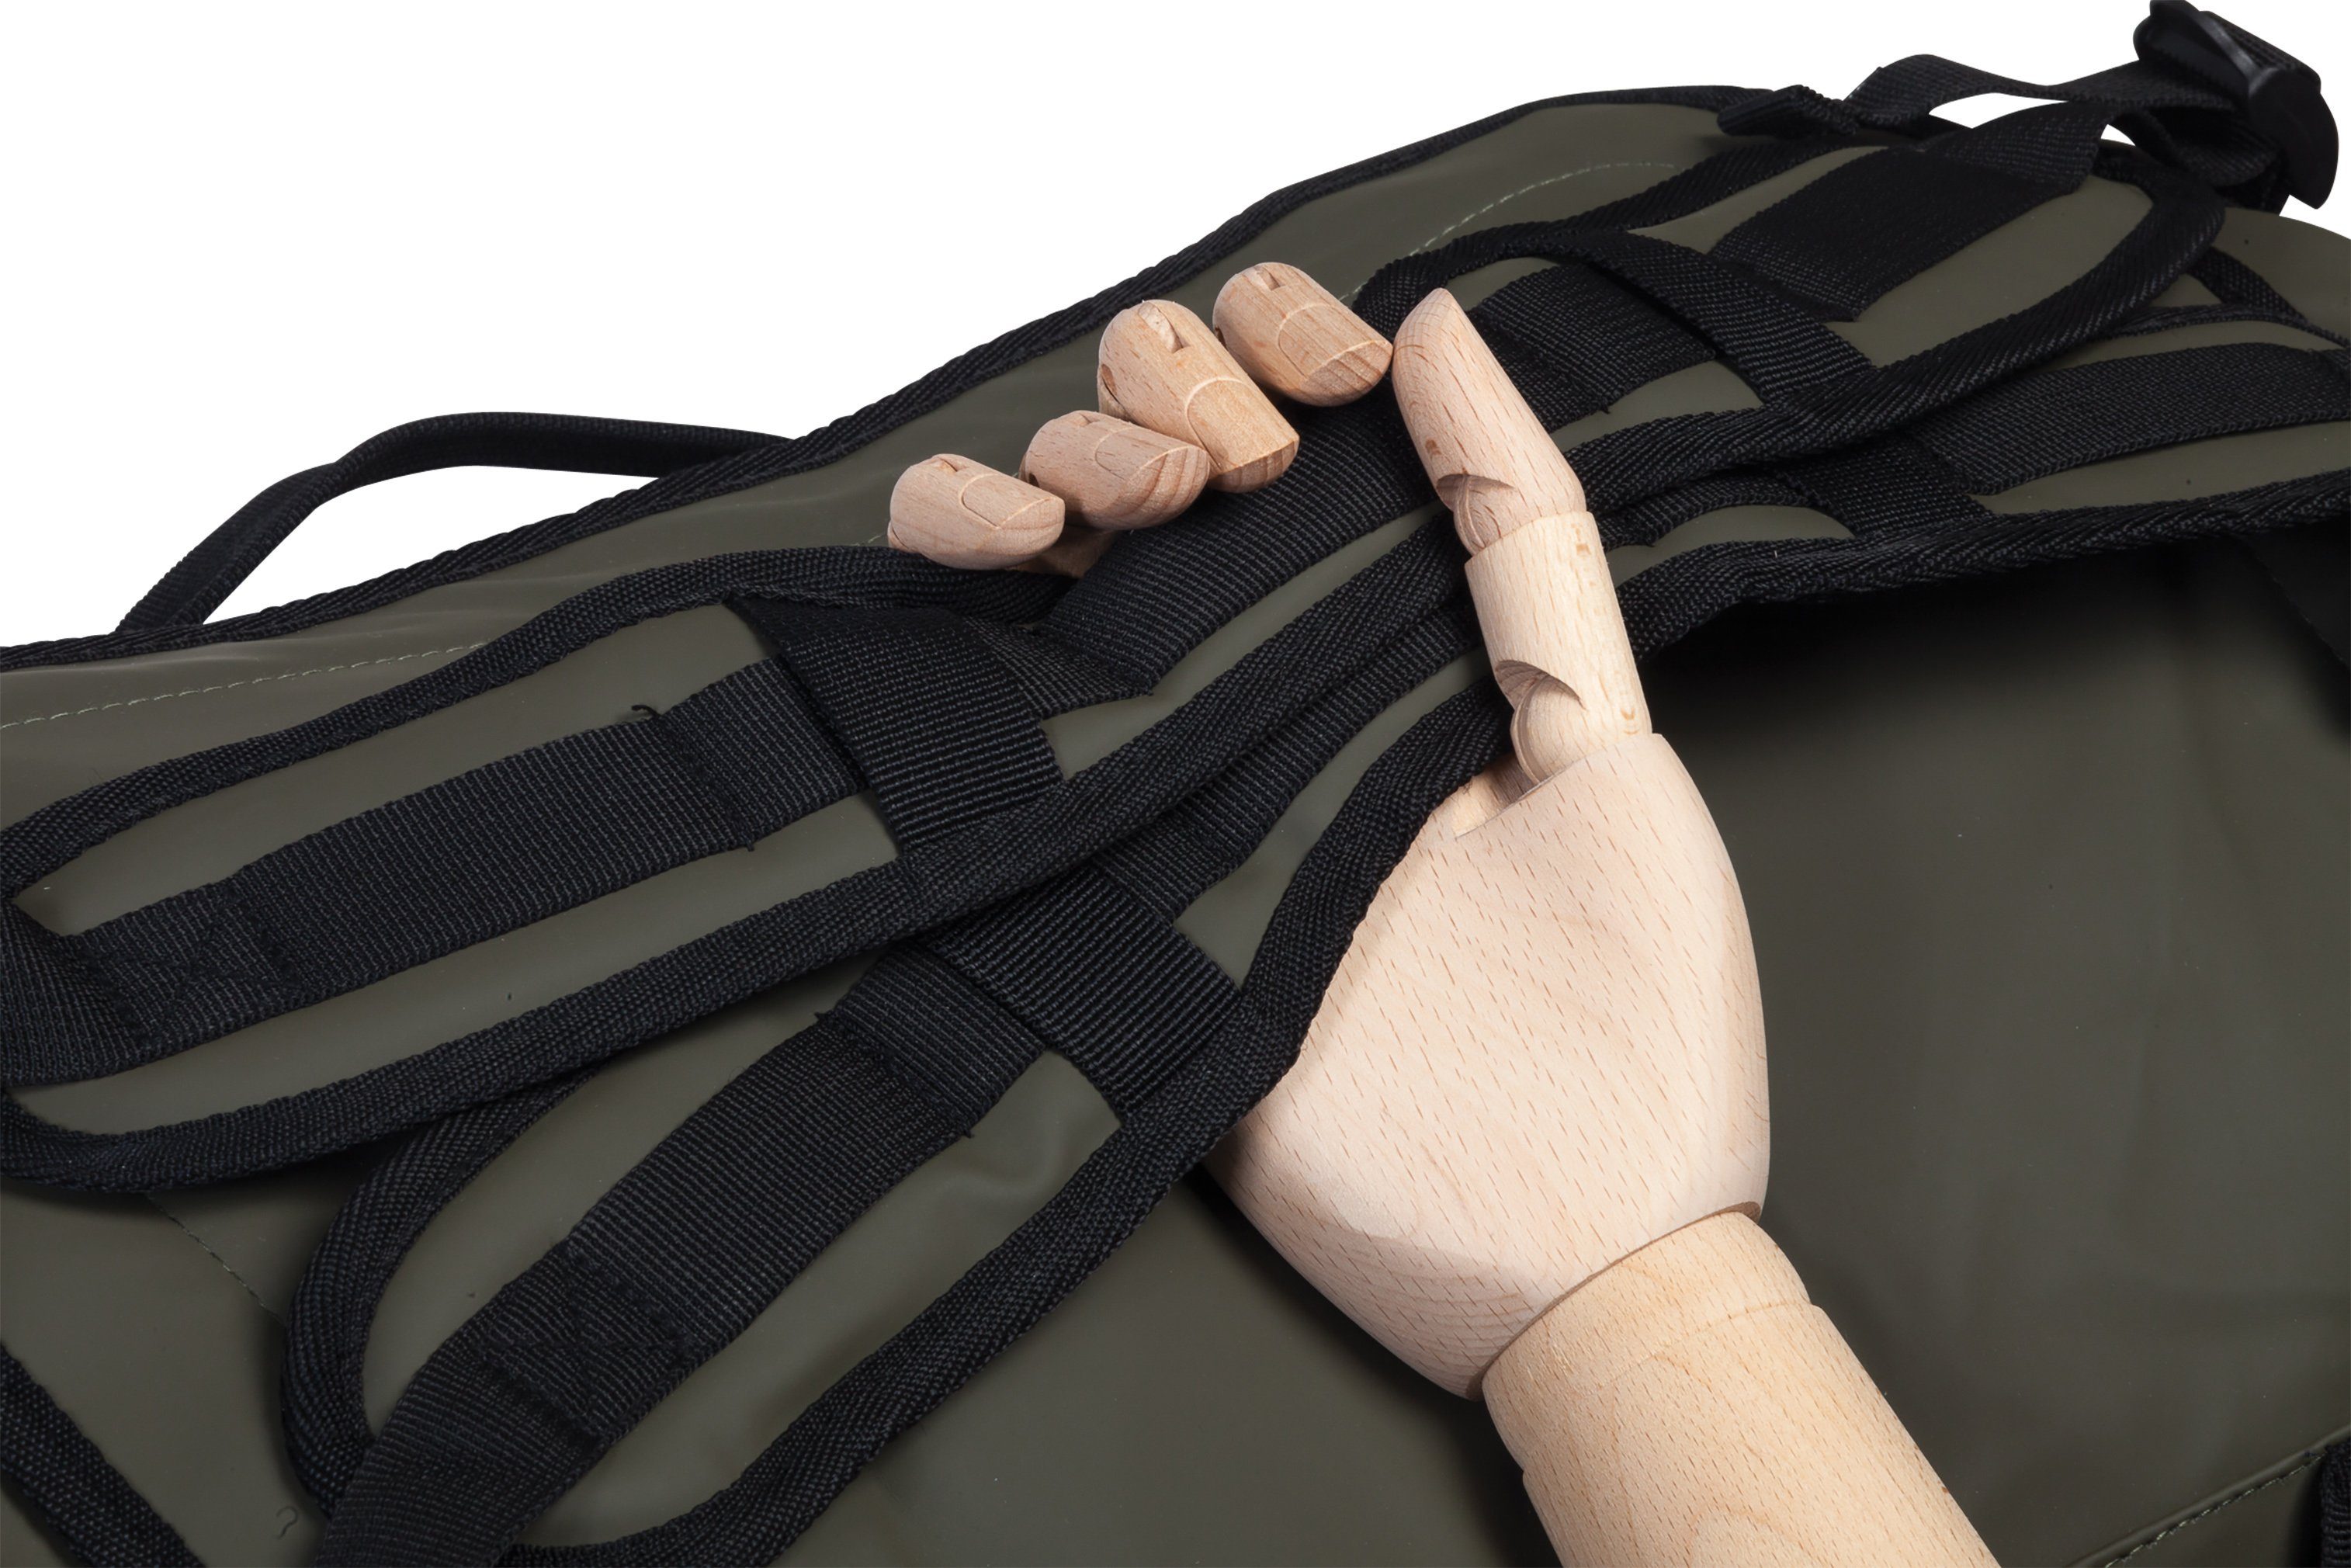 Hydro, Bench. Reisetasche Rucksackfunktion; Black schwarz, aus mit Material wasserabweisendem